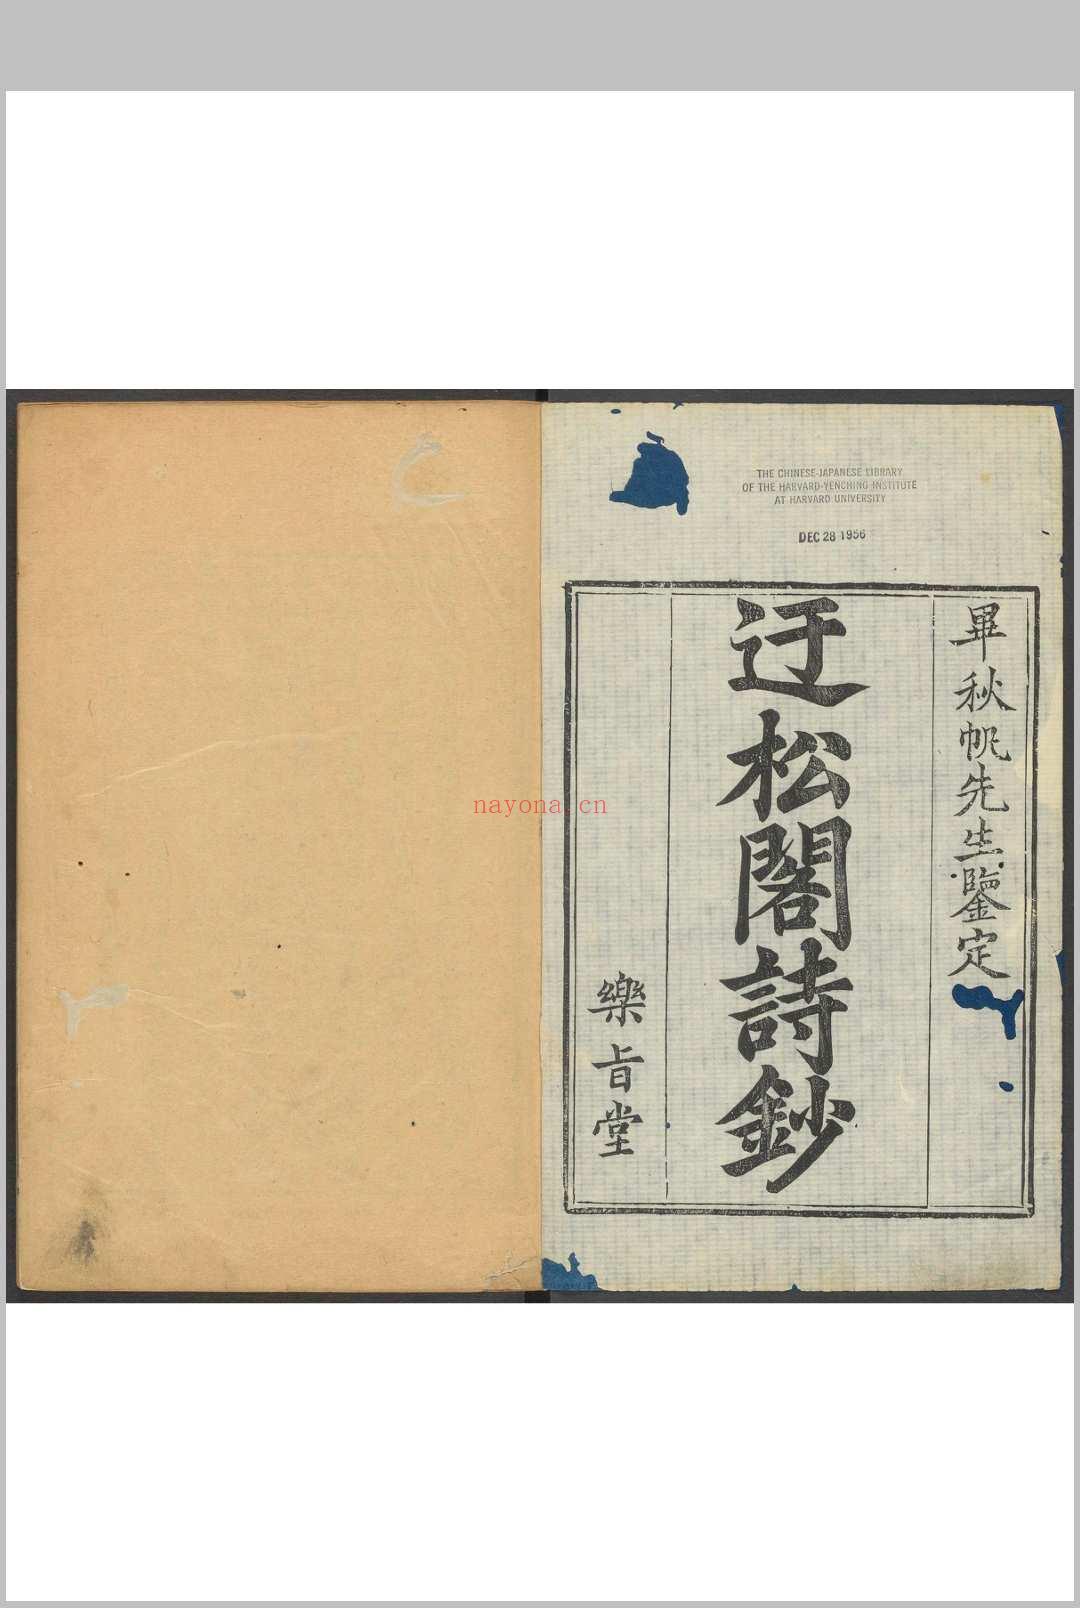 迂松阁诗钞  十二卷 李雝来撰.乐旨堂, [1784]